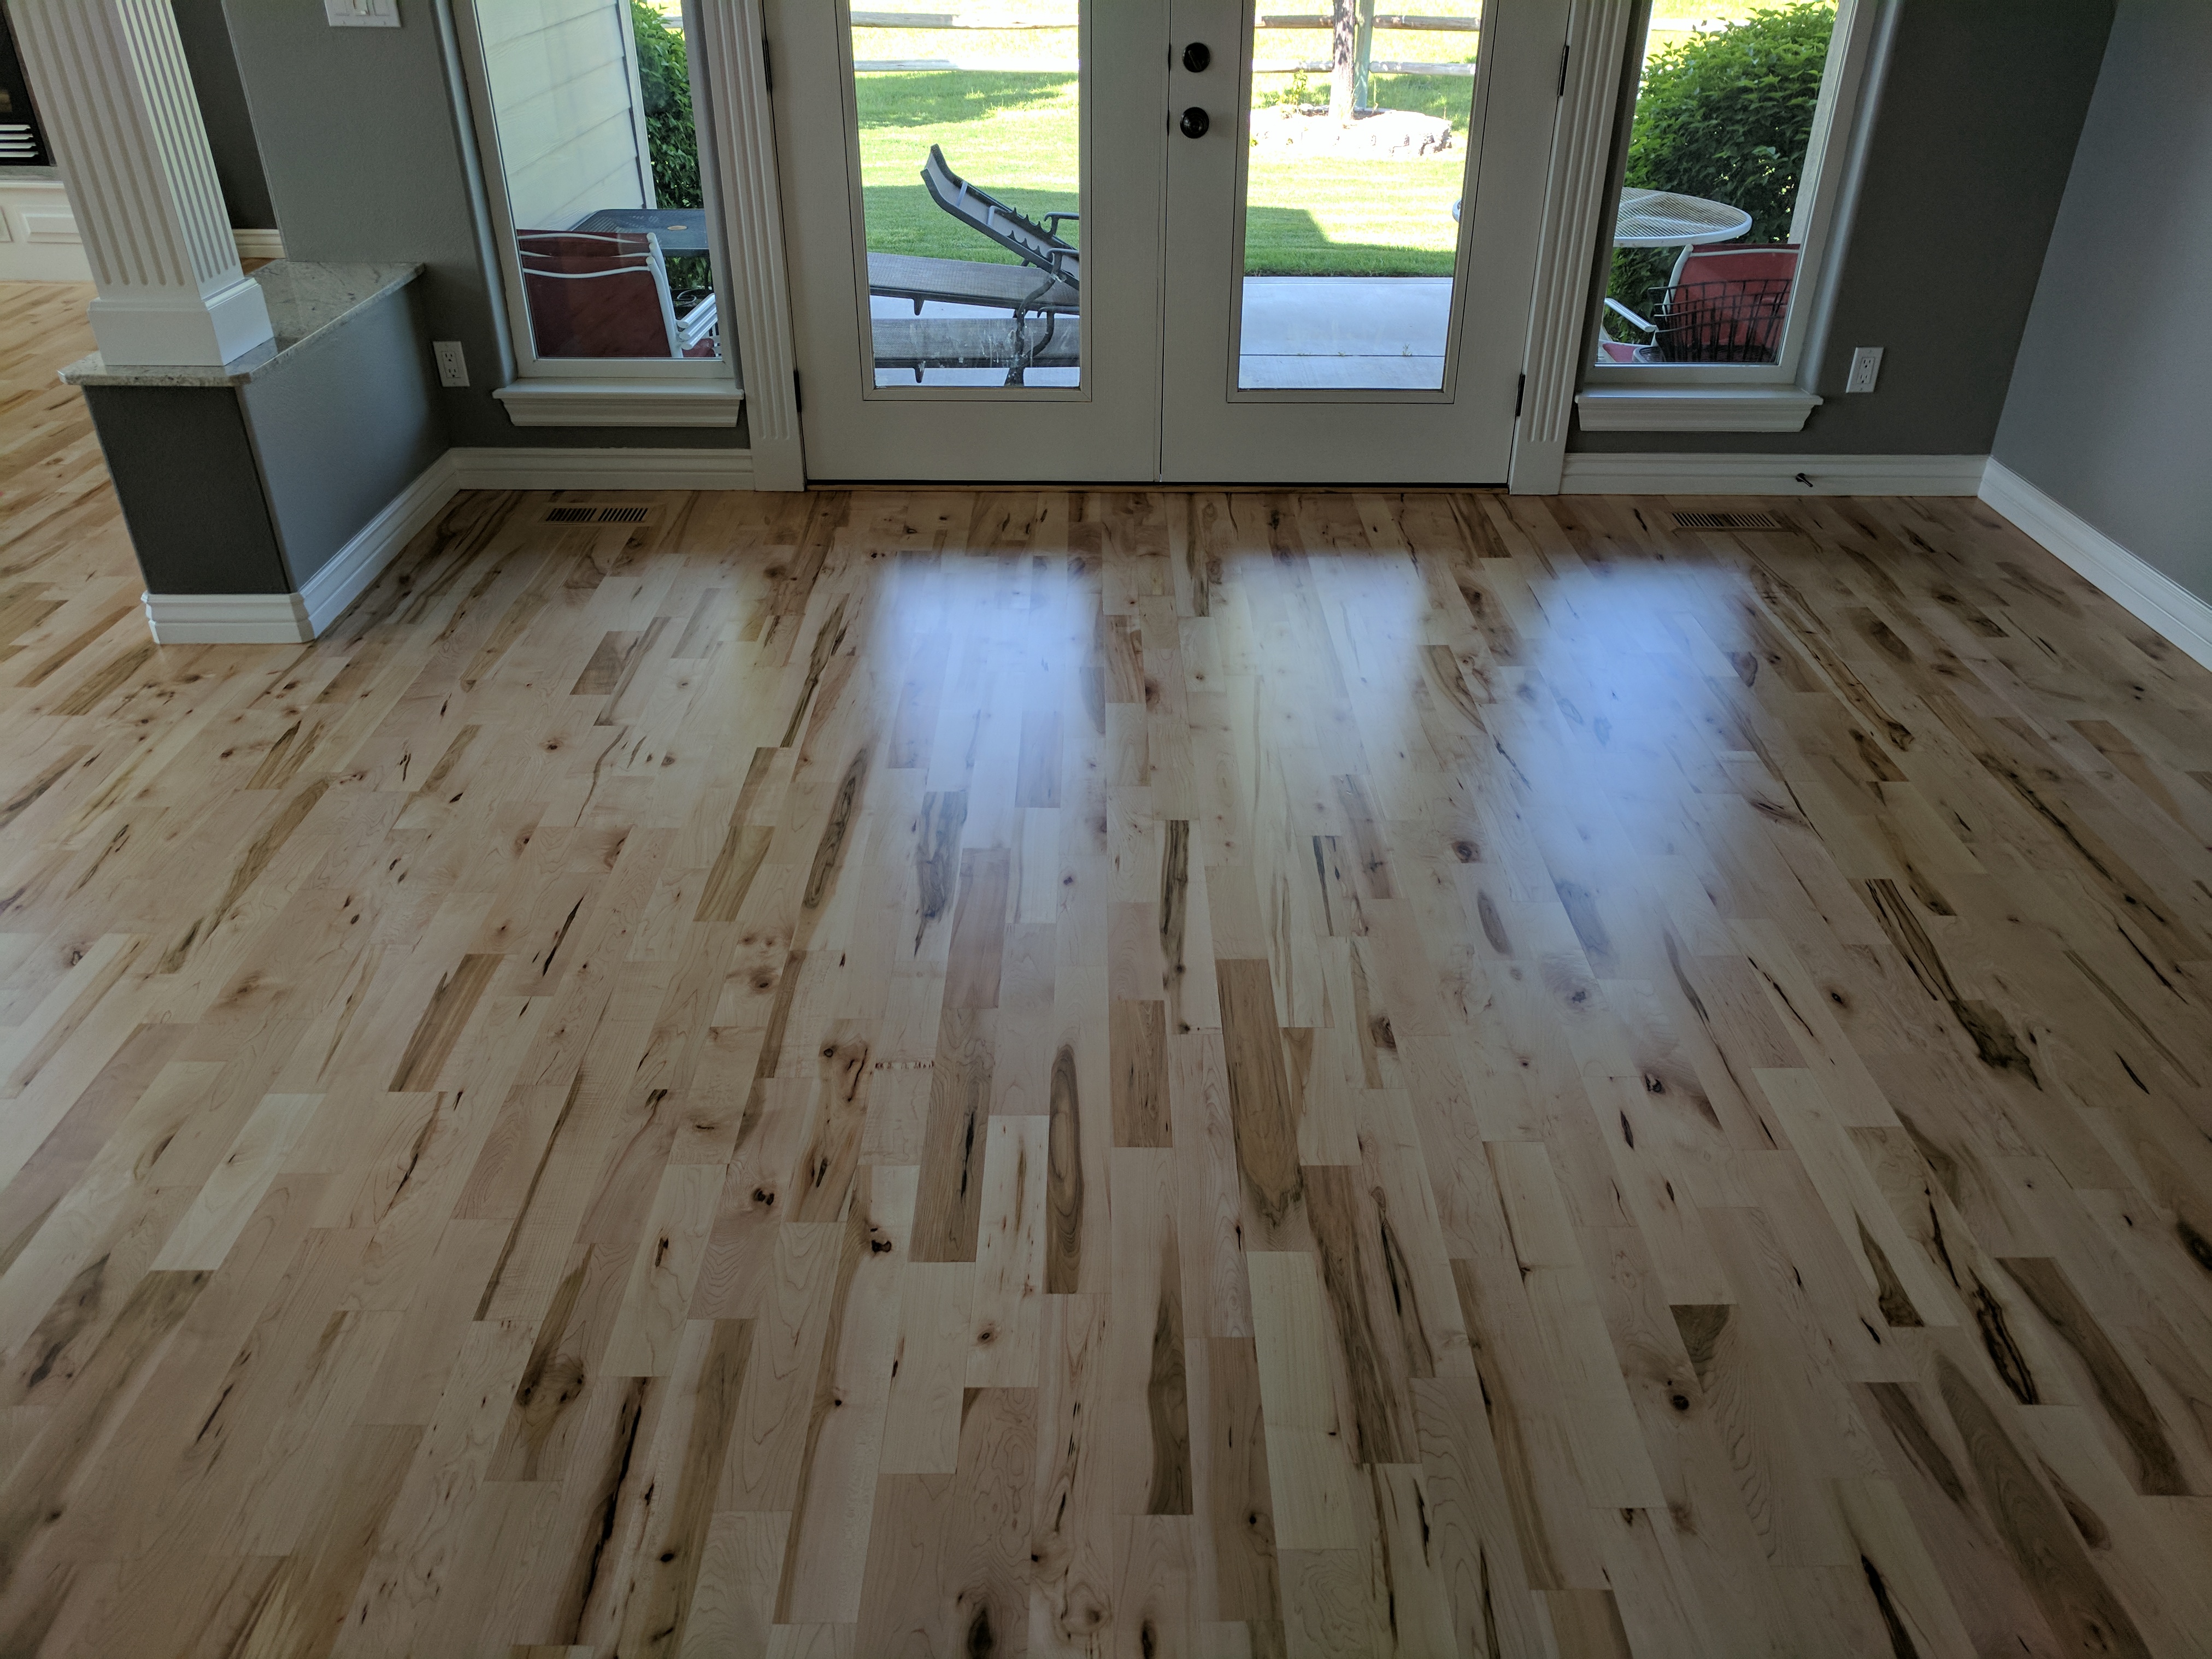 Longmont Hardwood Floor Refinishing And, Hardwood Floor Refinishing Aurora Co